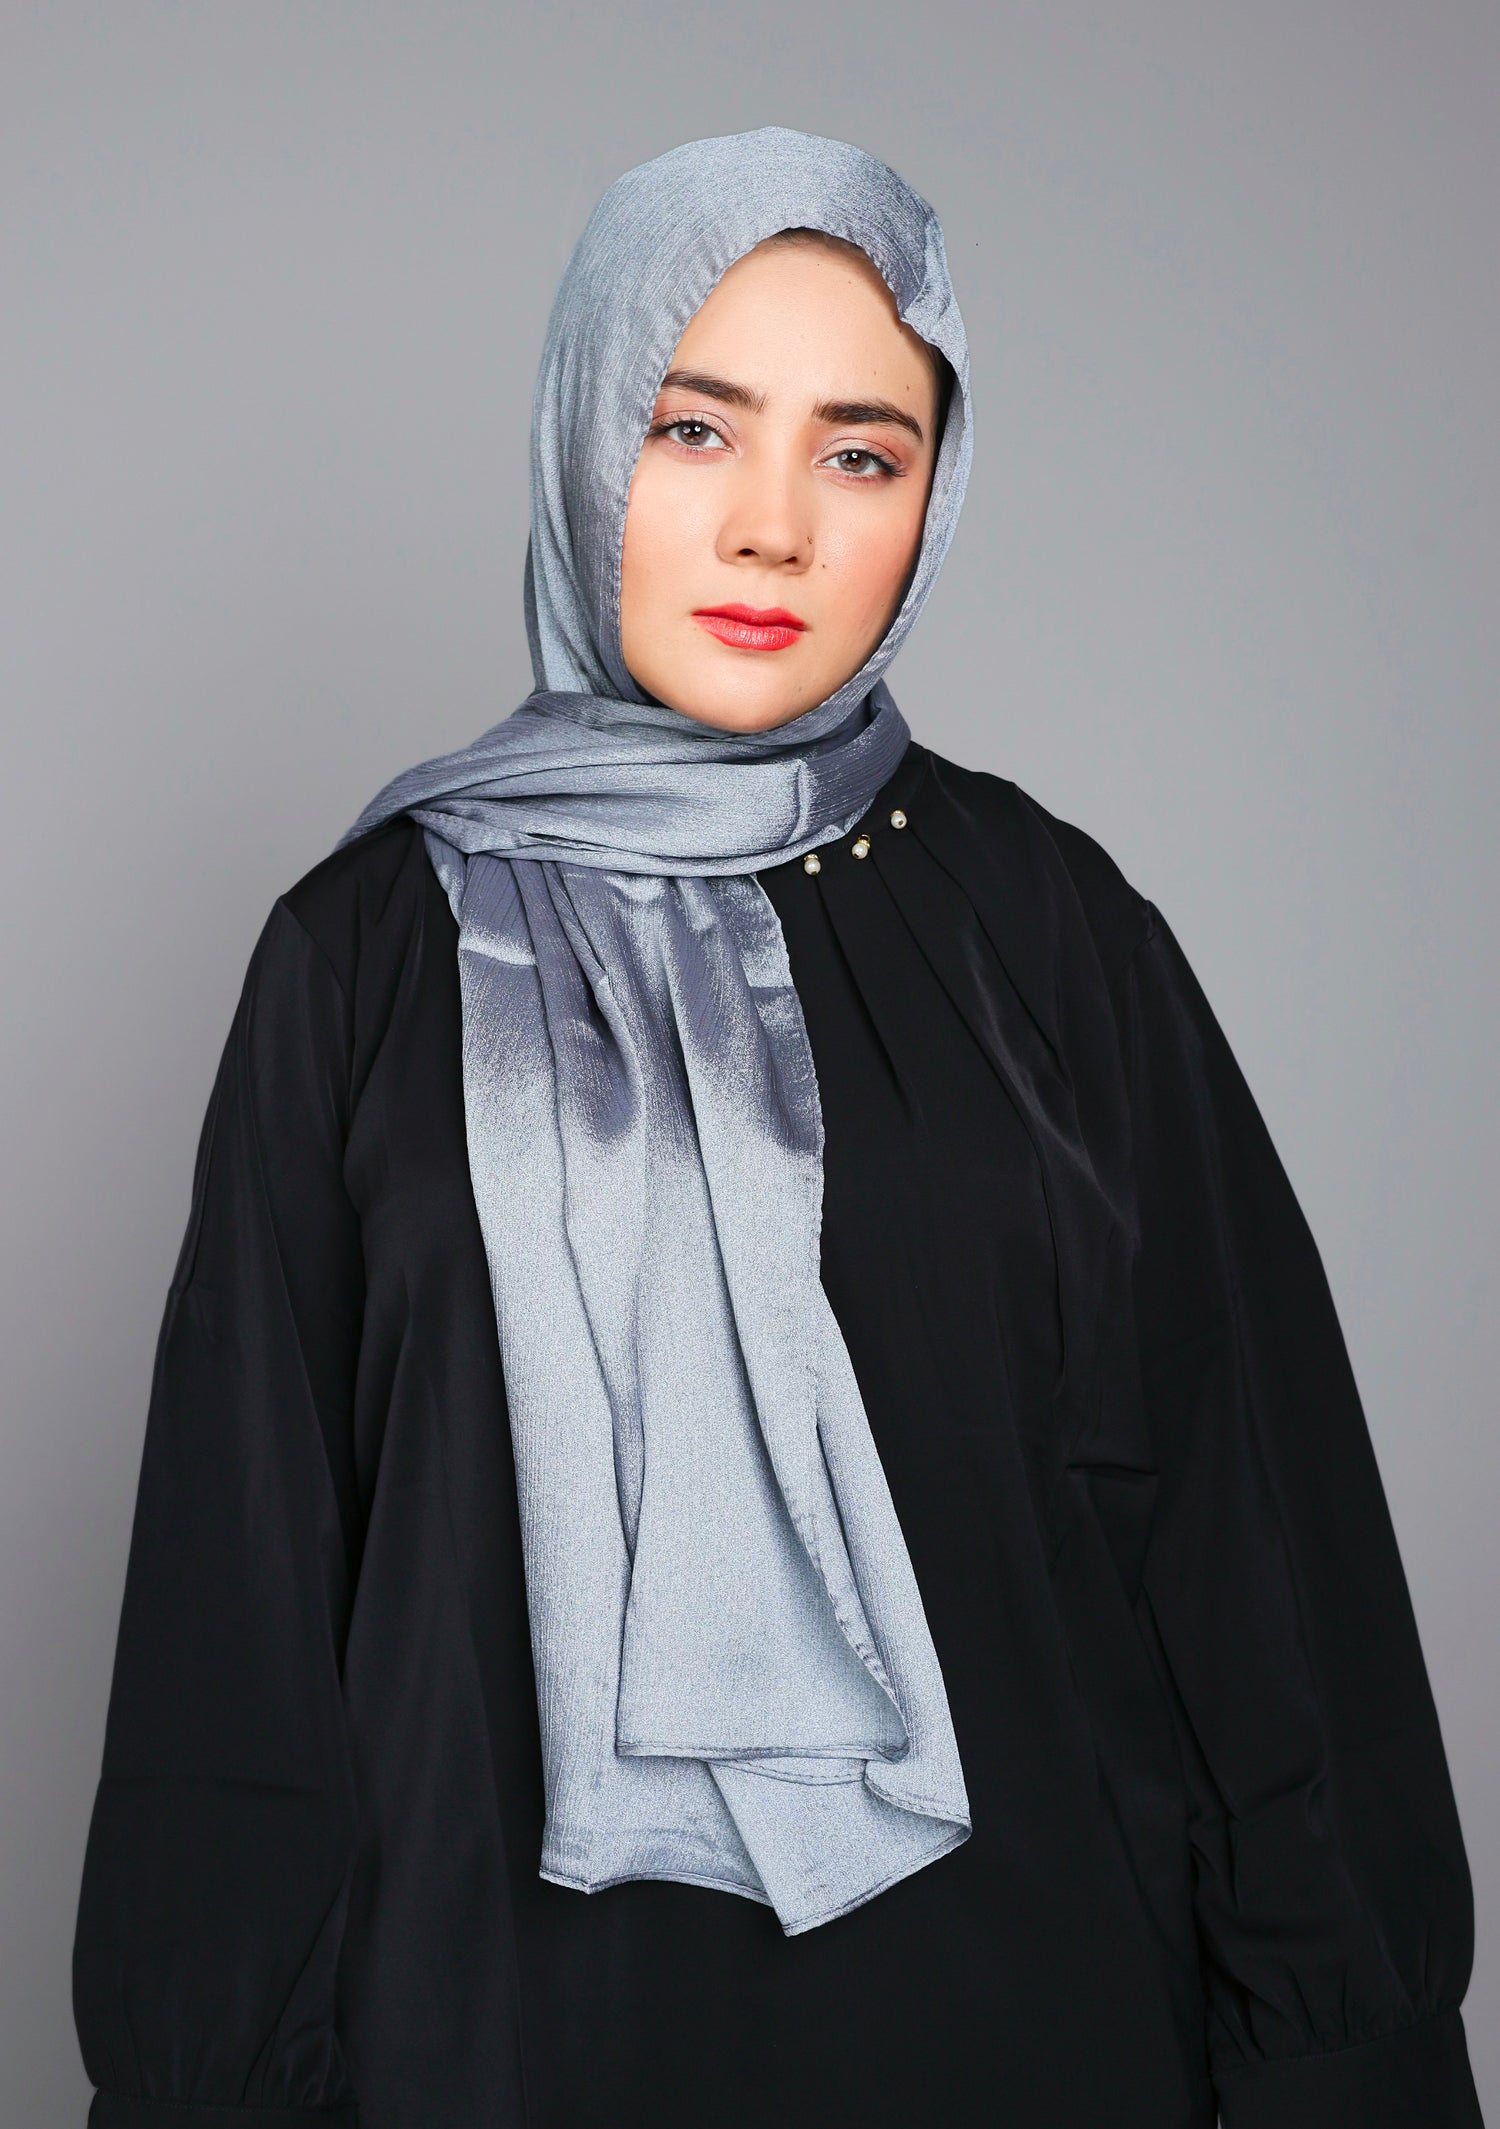 Metallic Chiffon Hijab in Silver